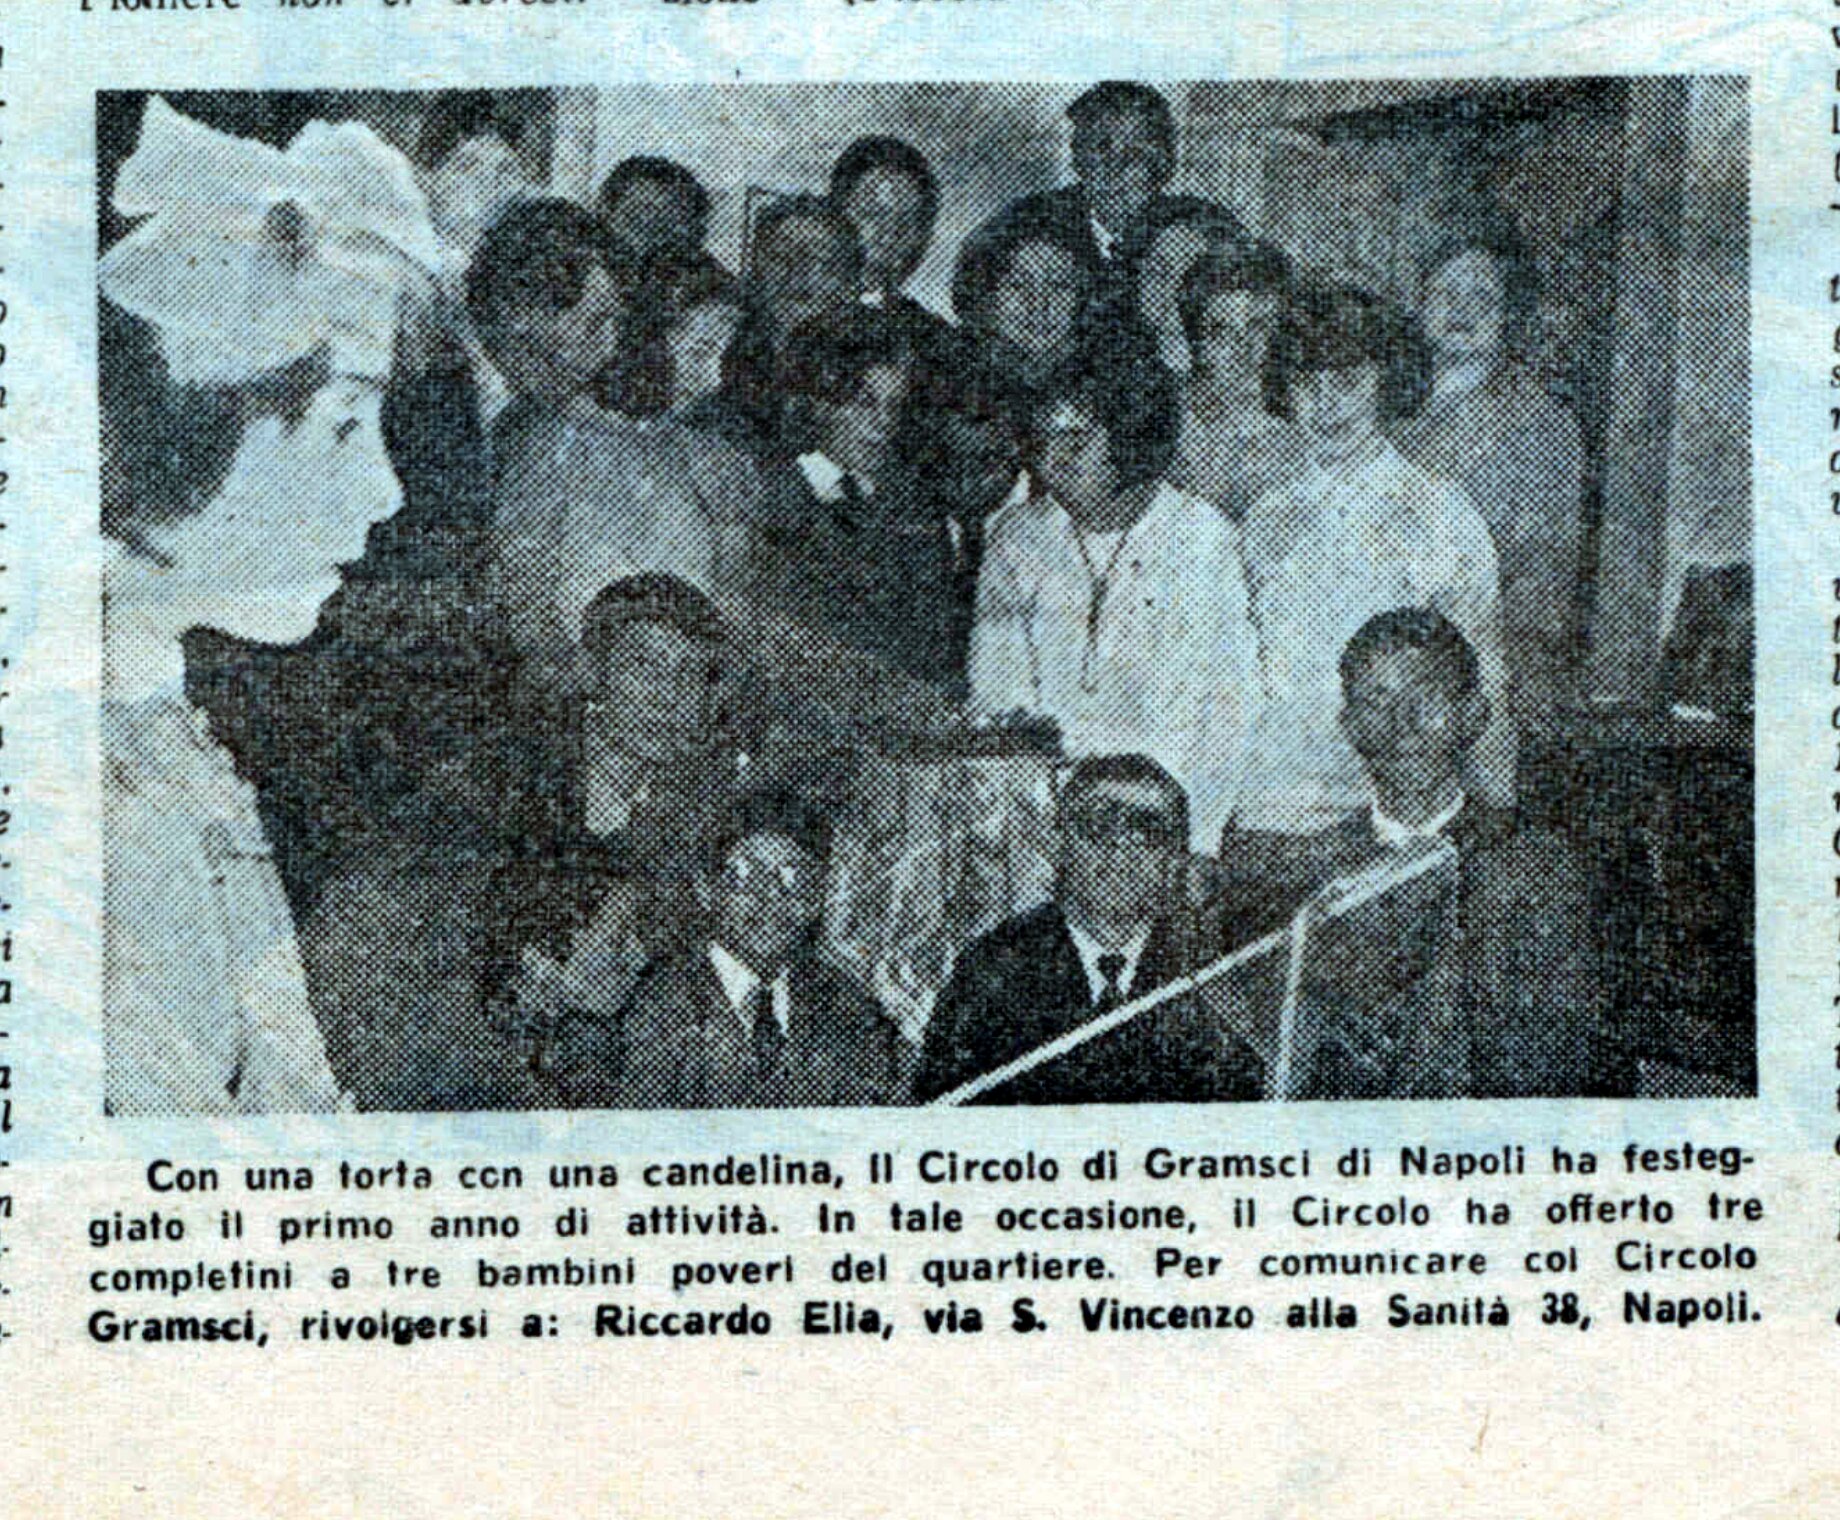 Circolo Gramsci Napoli Pioniere dellUnita n.9 3 marzo 1966